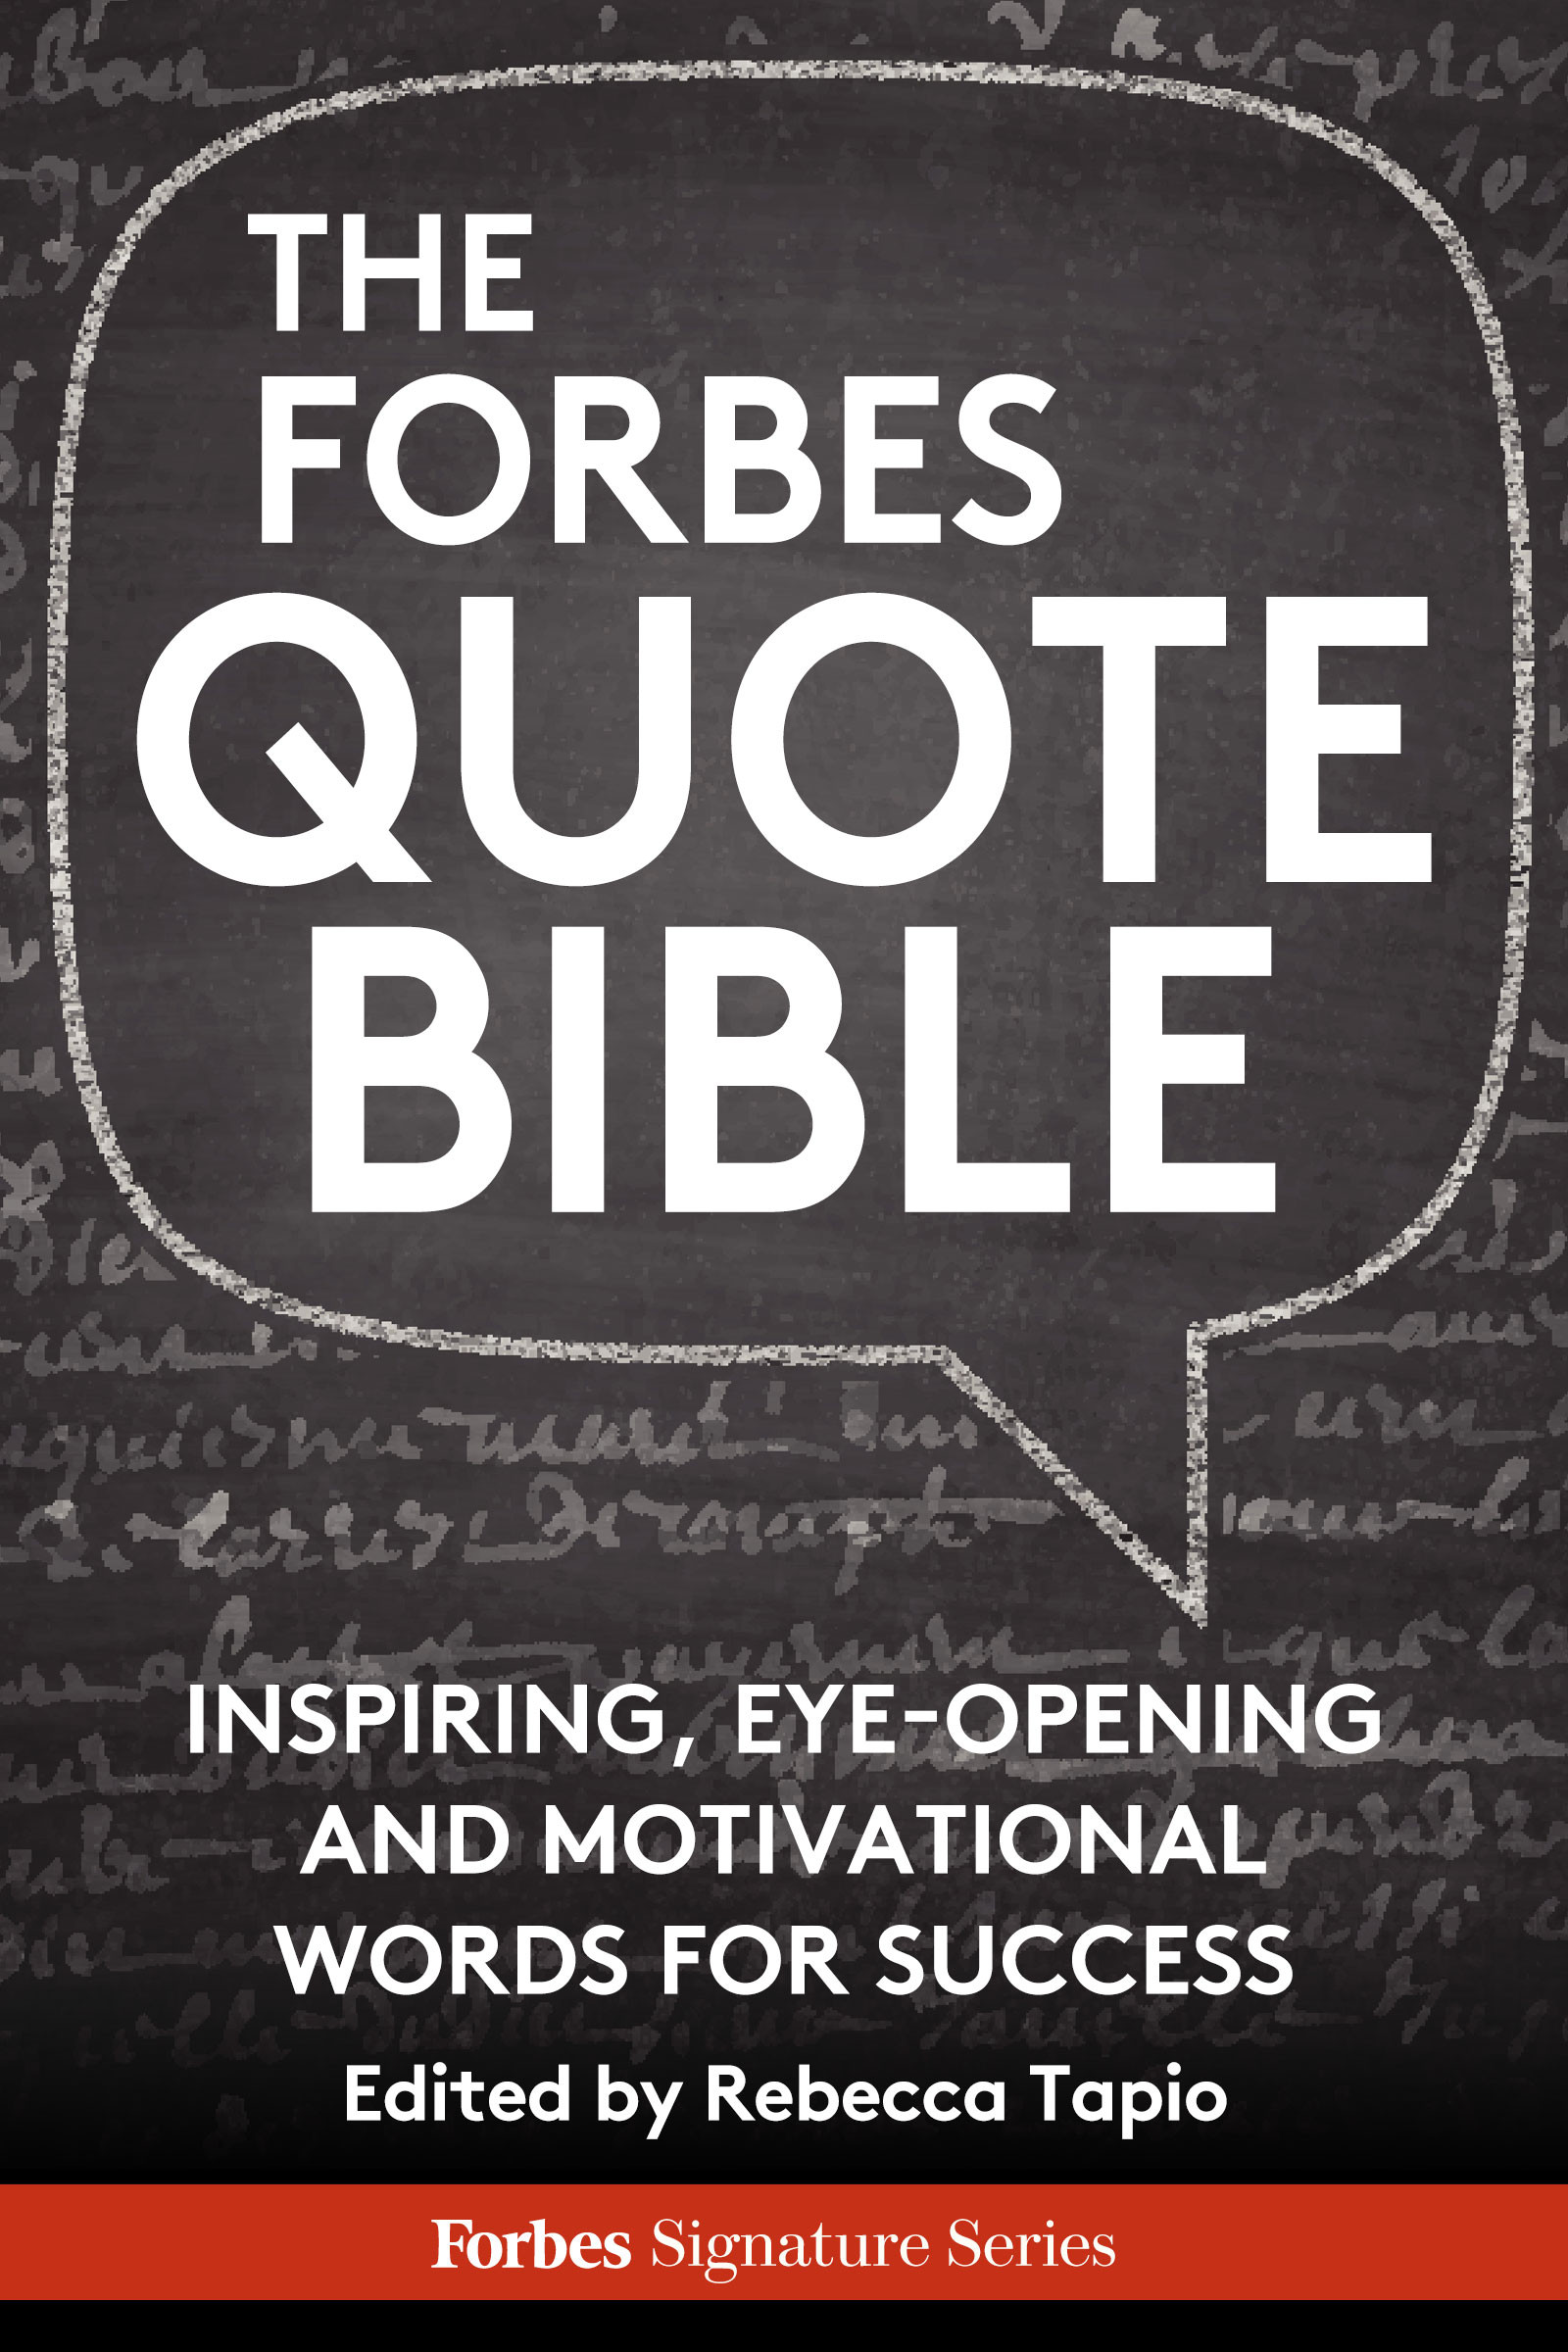 Leadership Quotes Forbes
 Leadership Quotes Forbes QuotesGram